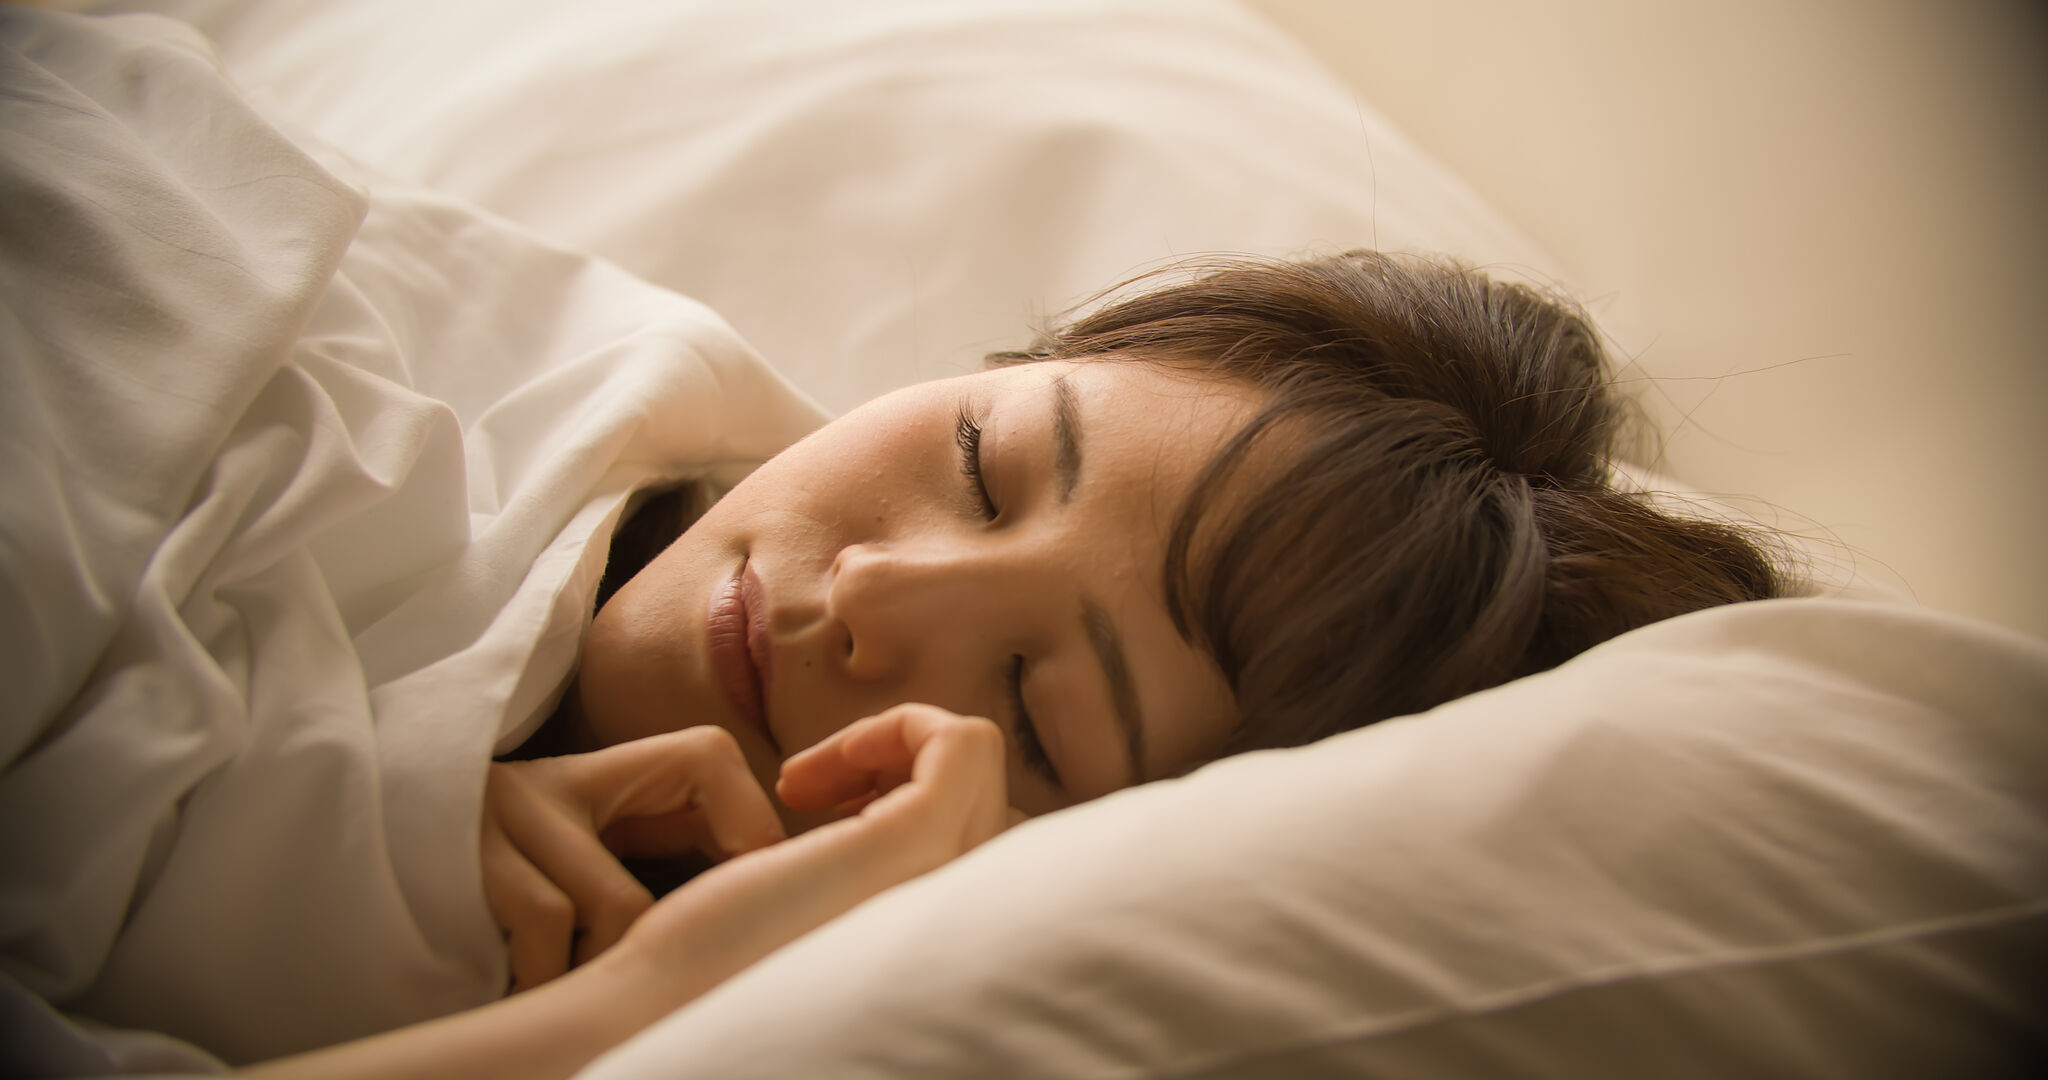 寝だめではなく質の高い睡眠をとることが大切